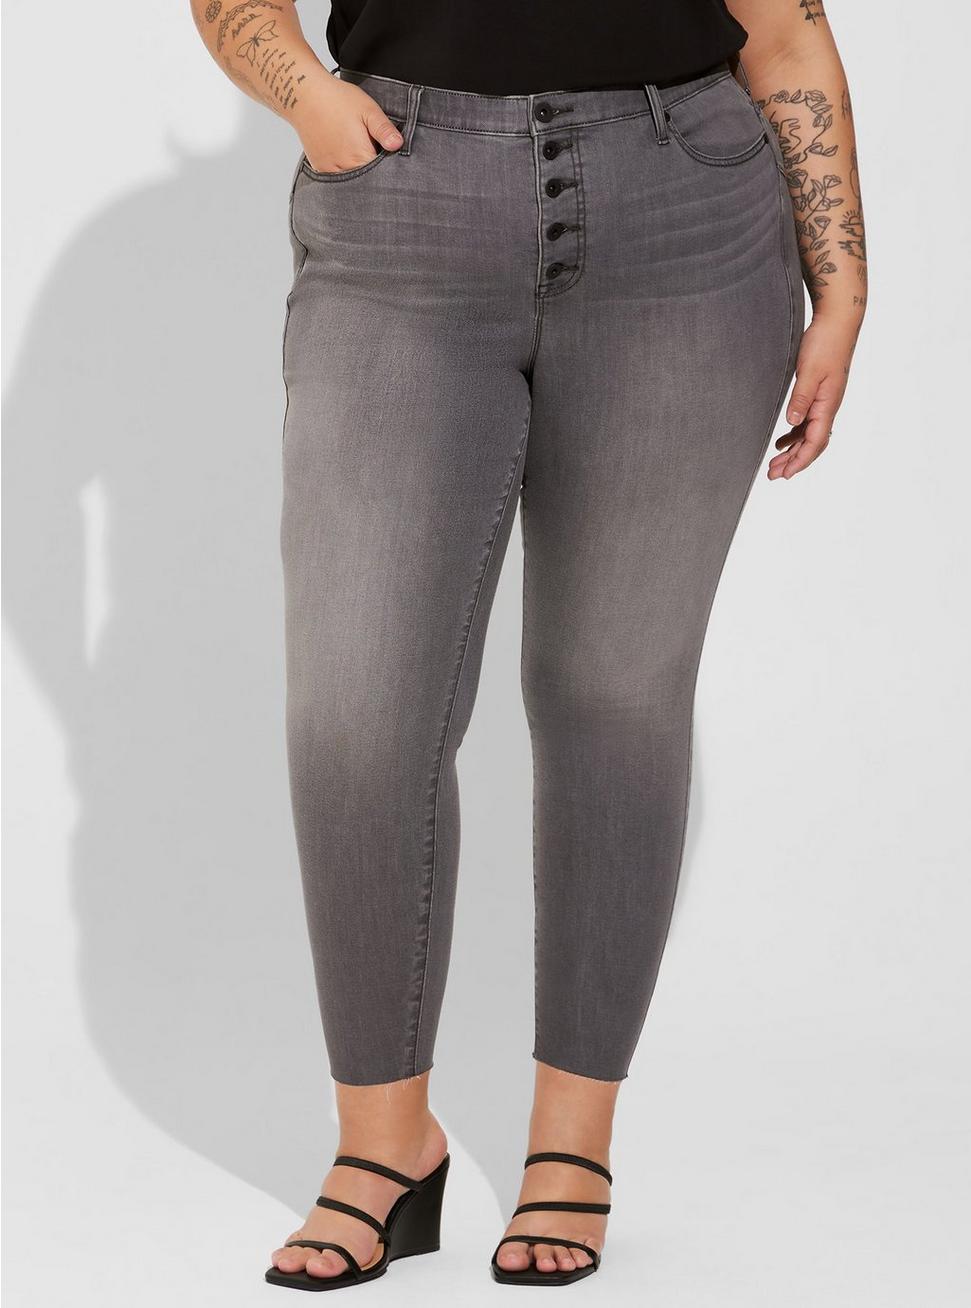 Bombshell Skinny Super Soft High-Rise Jean (Short), CELESTIAL, alternate